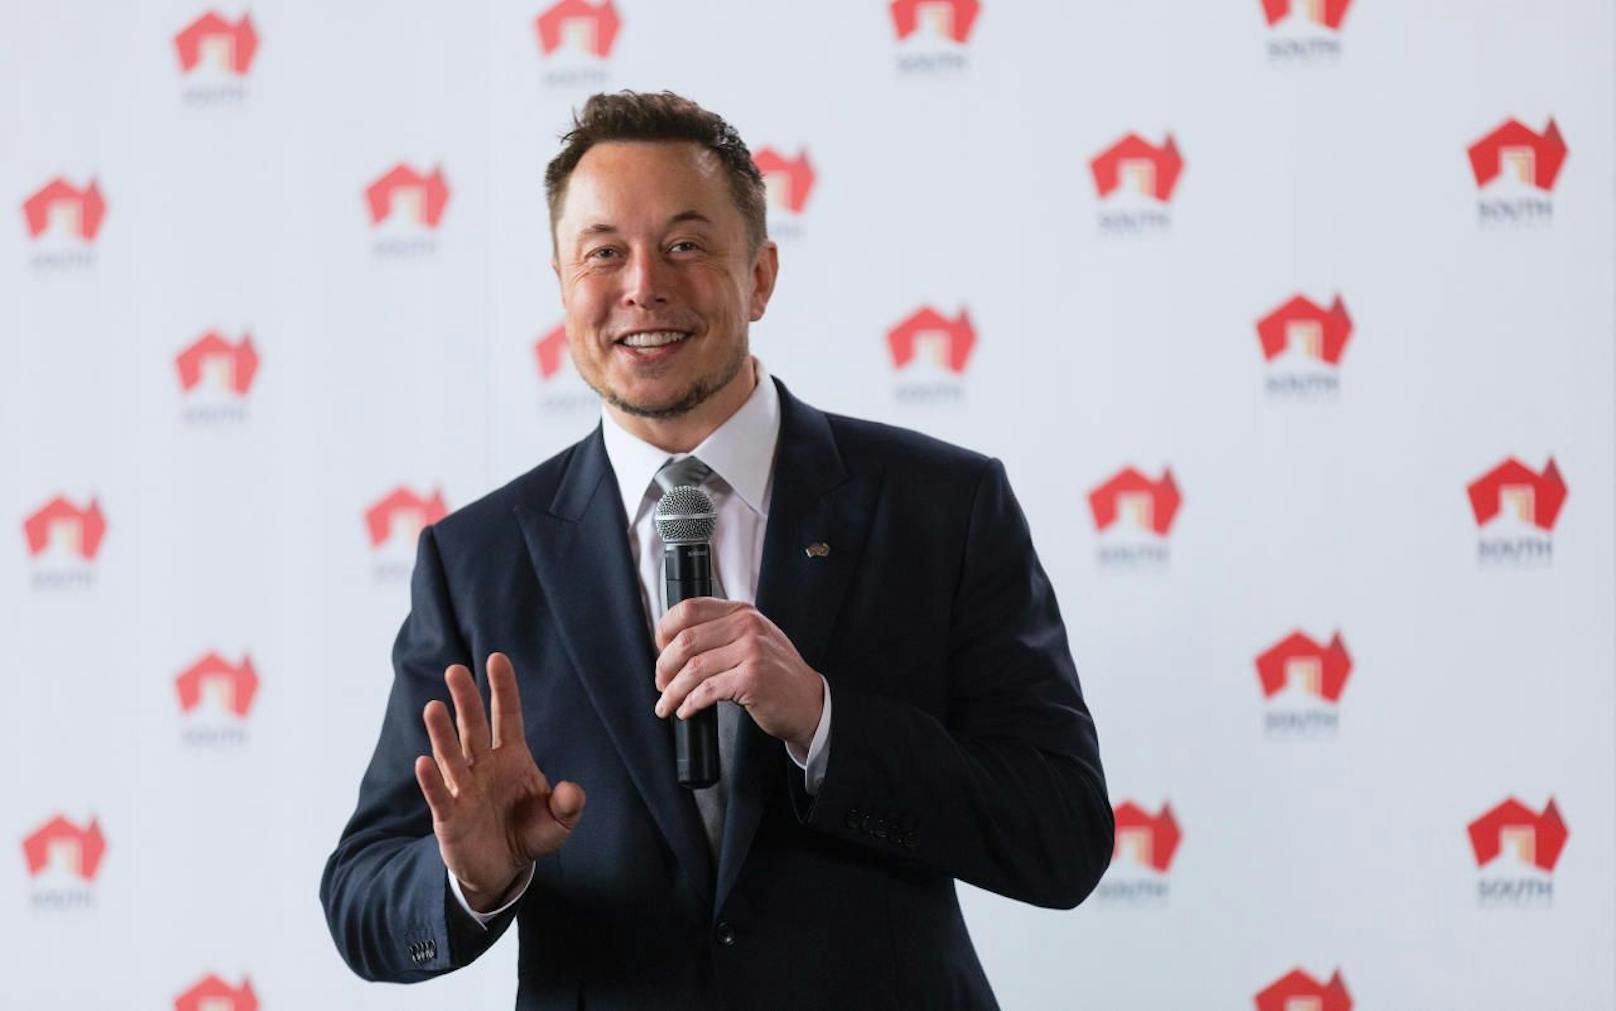  Tesla-Chef Elon Musk ist eigentlich ein Fan von Norwegen. Kein Wunder: In keinem anderen Land der Welt ist der Anteil von Ökoautos höher, auch die Tesla-Modelle boomen. Doch seine Freude dürfte sich gerade trüben. 